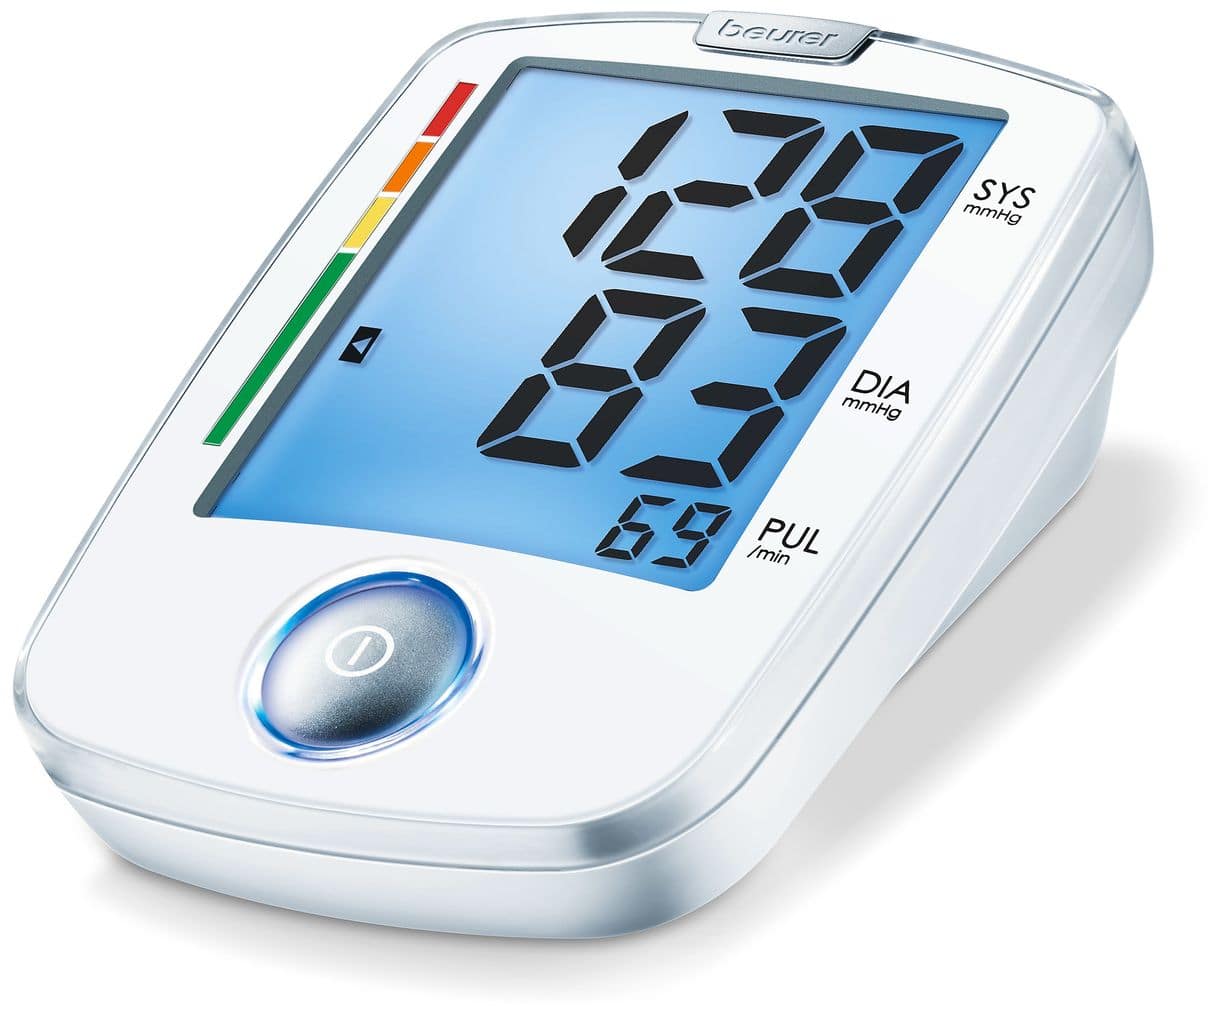 BM44 Blutdruckmessgerät XL-Display Ein-Knopf-Bedienung 22-30cm 